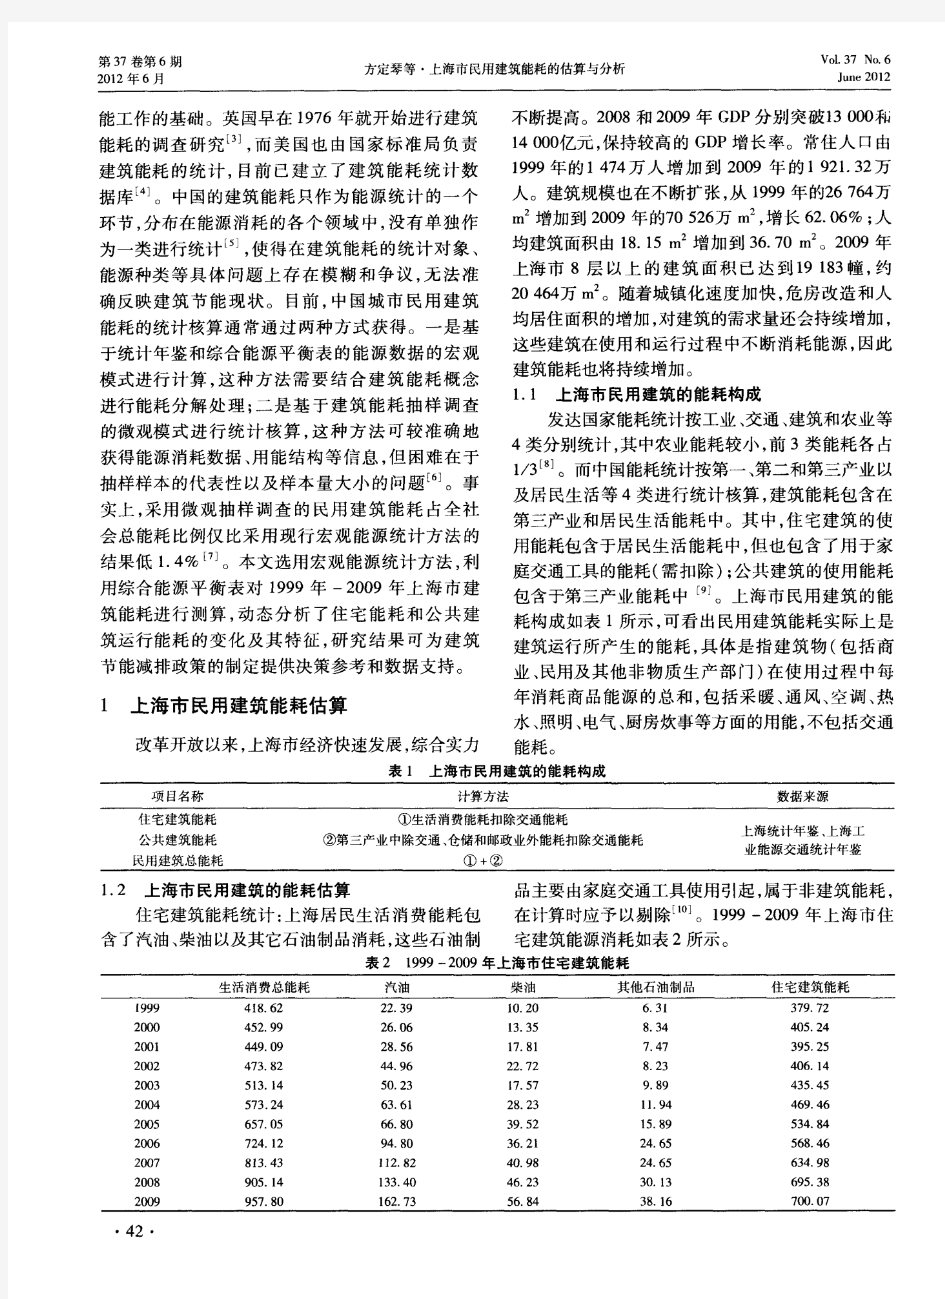 上海市民用建筑能耗的估算与分析